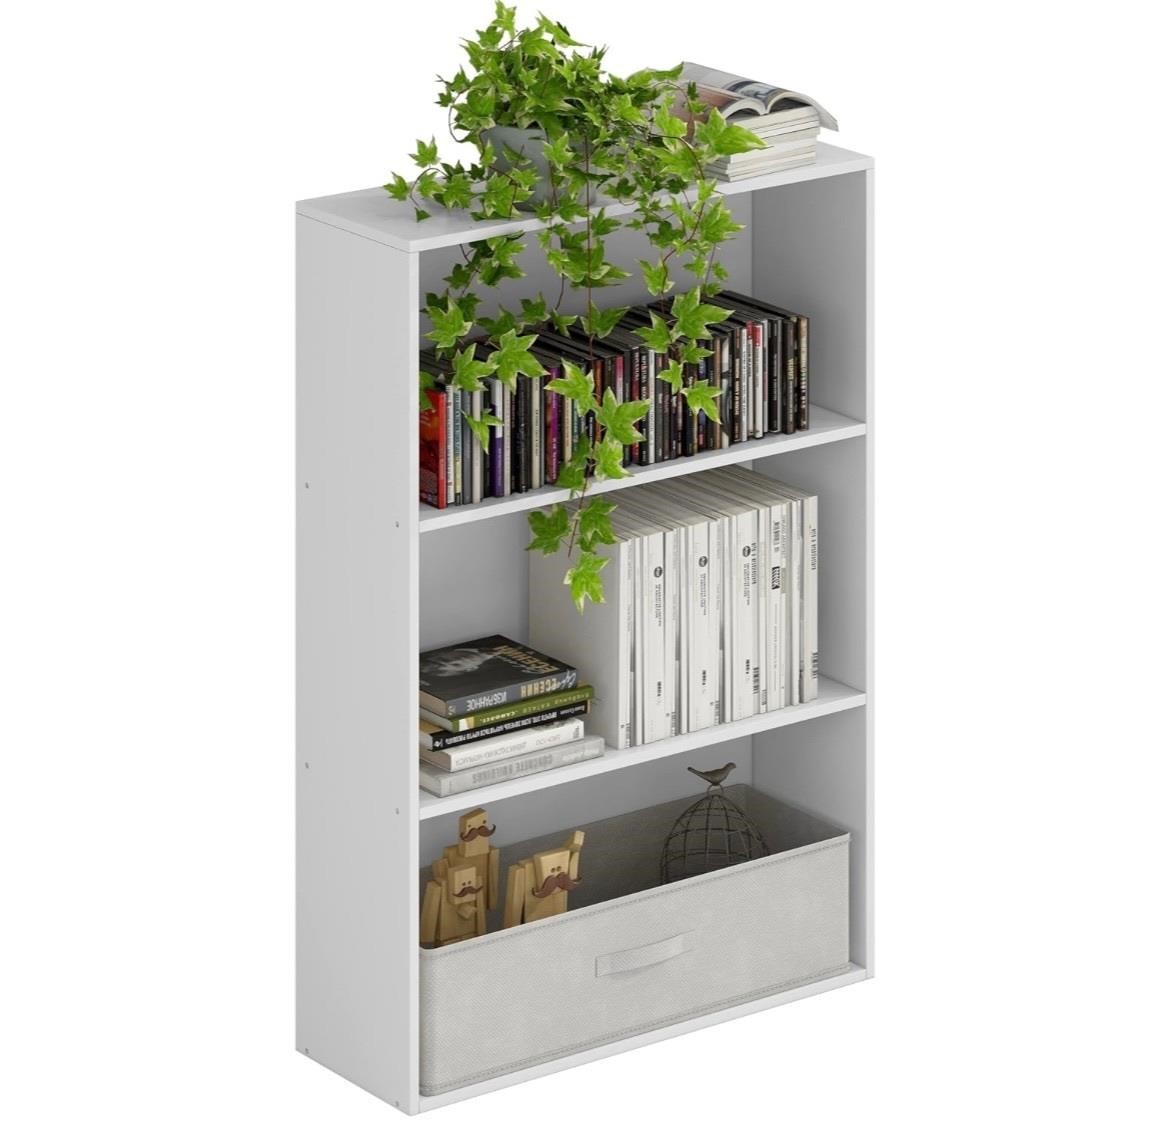 Bookshelf Floor Standing 3-Tier Open Bookcase